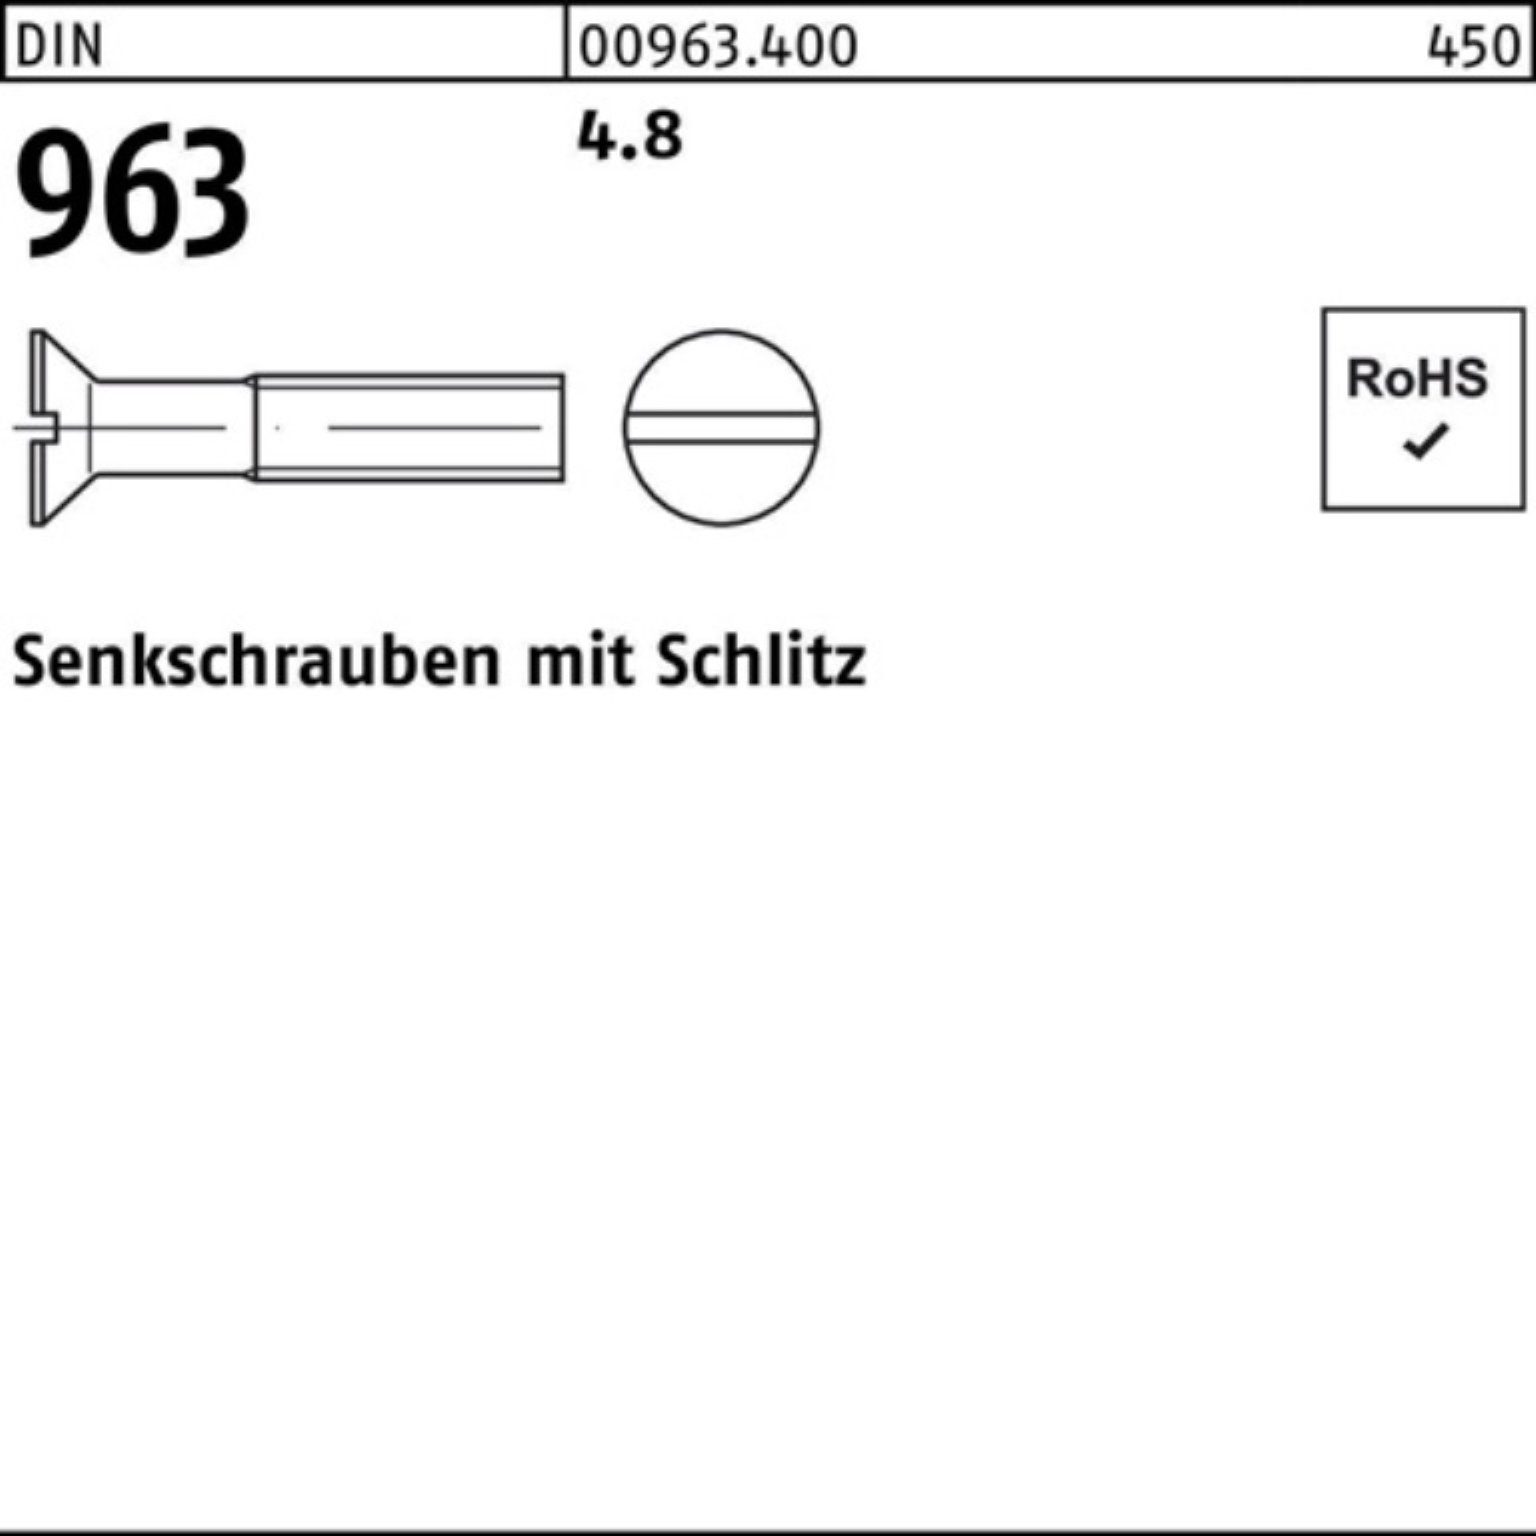 Senkschraube 963 100er 50 Reyher Schlitz 963 4.8 DIN Stück DIN M16x Senkschraube Pack 55